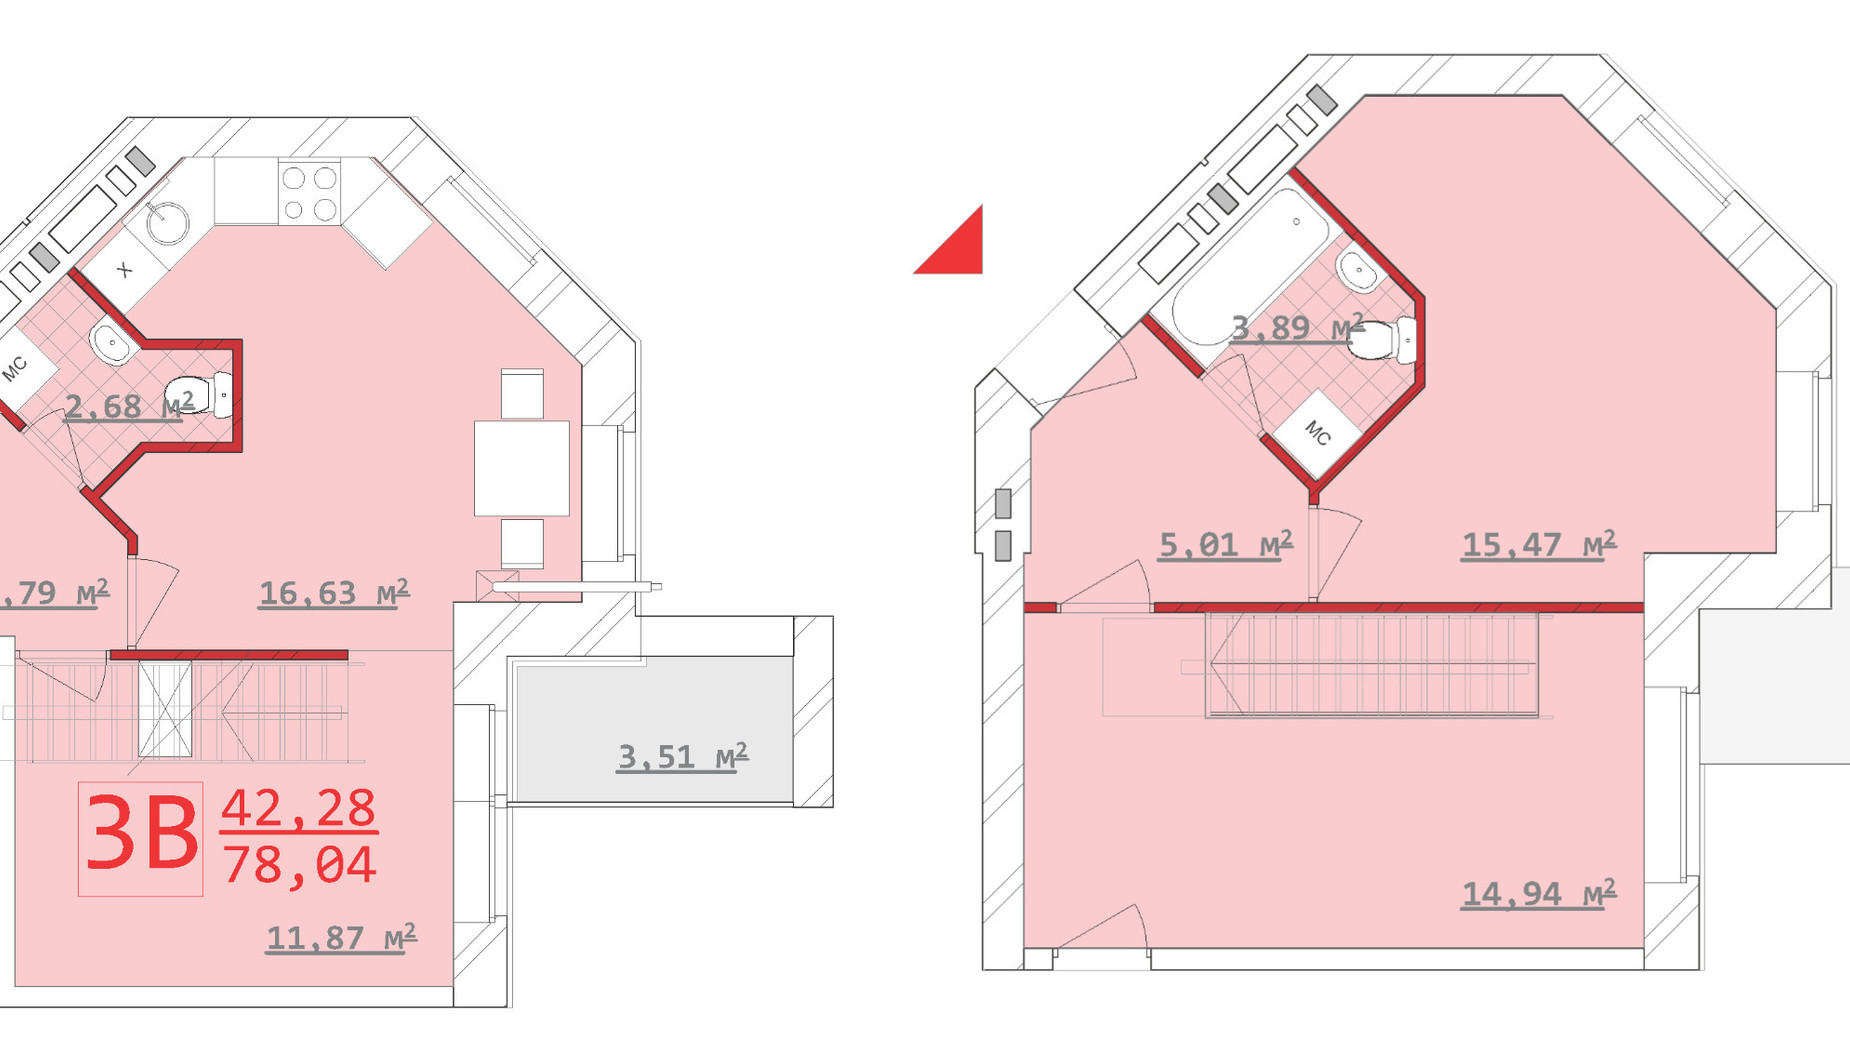 Планировка много­уровневой квартиры в ЖК Новый дом Котлова 78.04 м², фото 286674